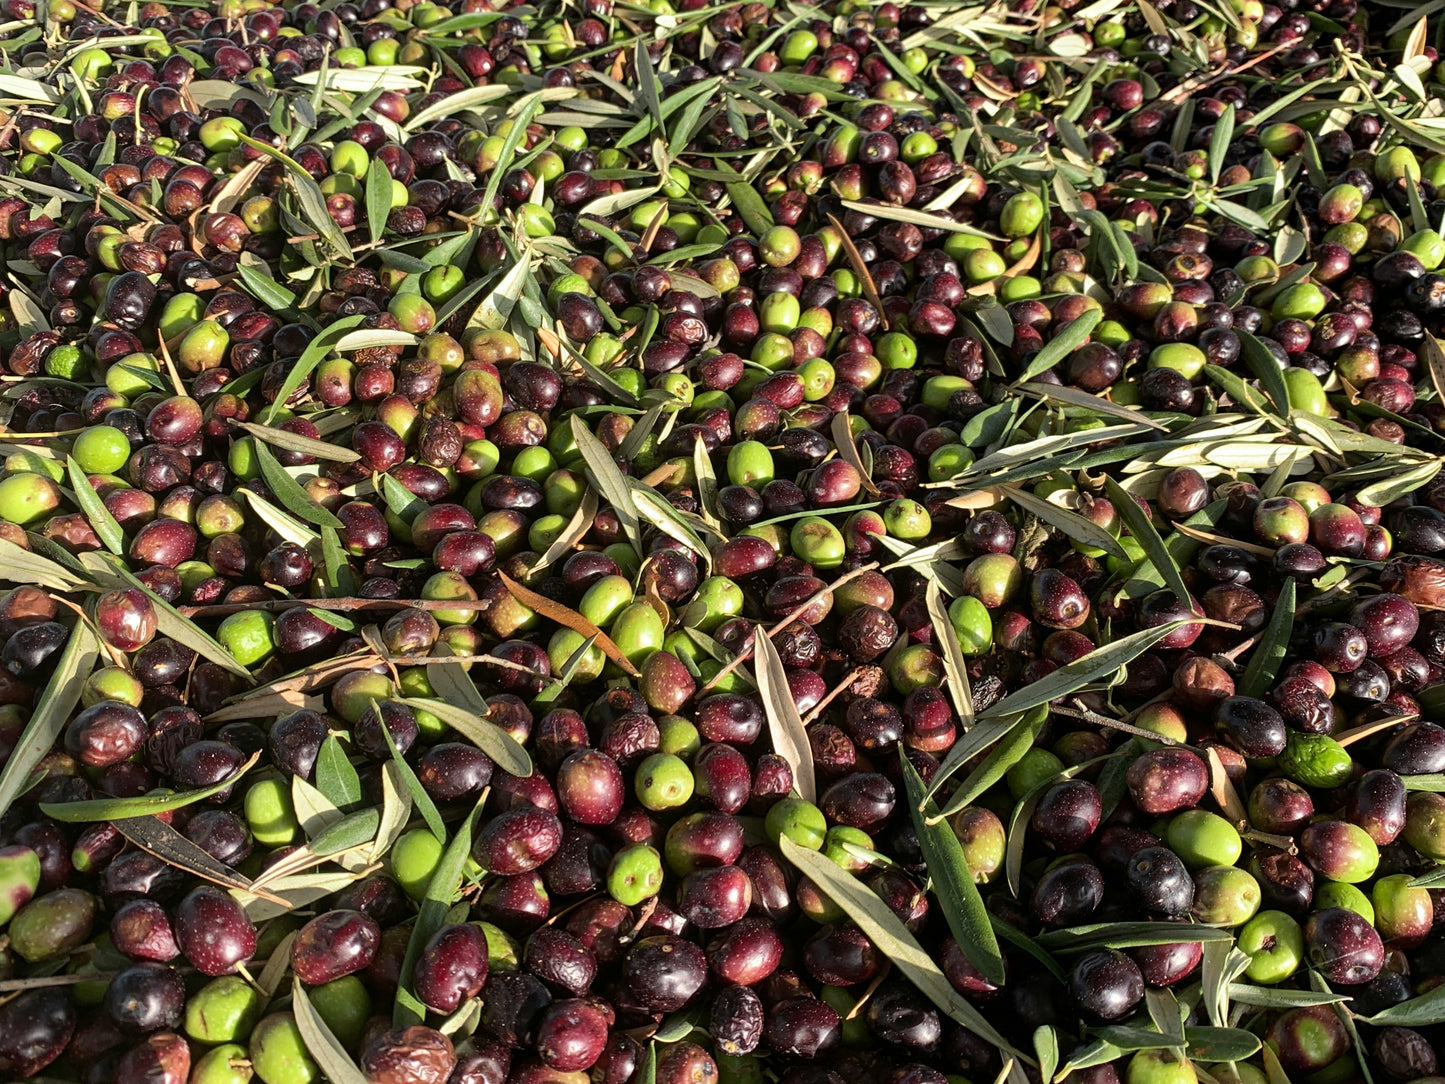 Golden Creta, natives Olivenöl extra aus Kreta 12x1 Liter Kanister - frische Ernte